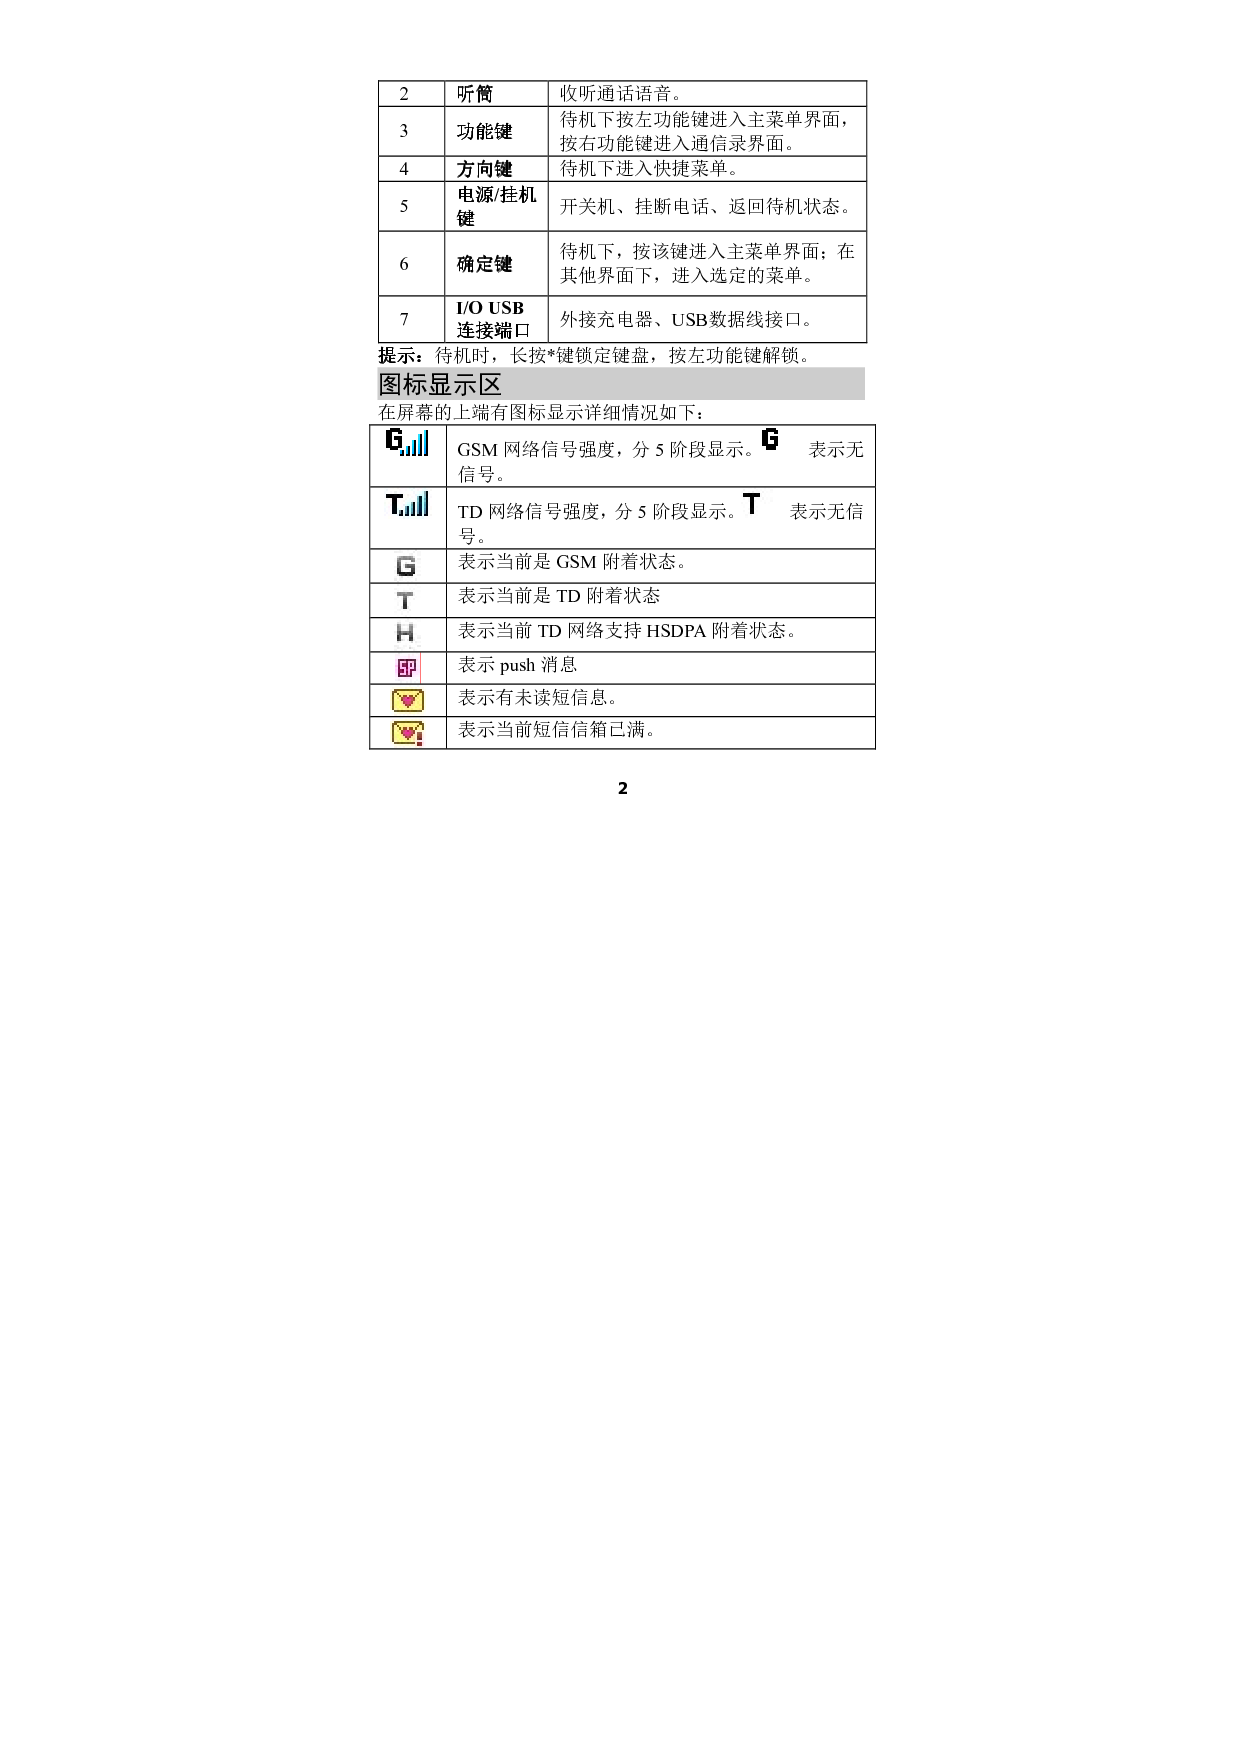 海信 Hisense HS-T11 用户指南 第3页